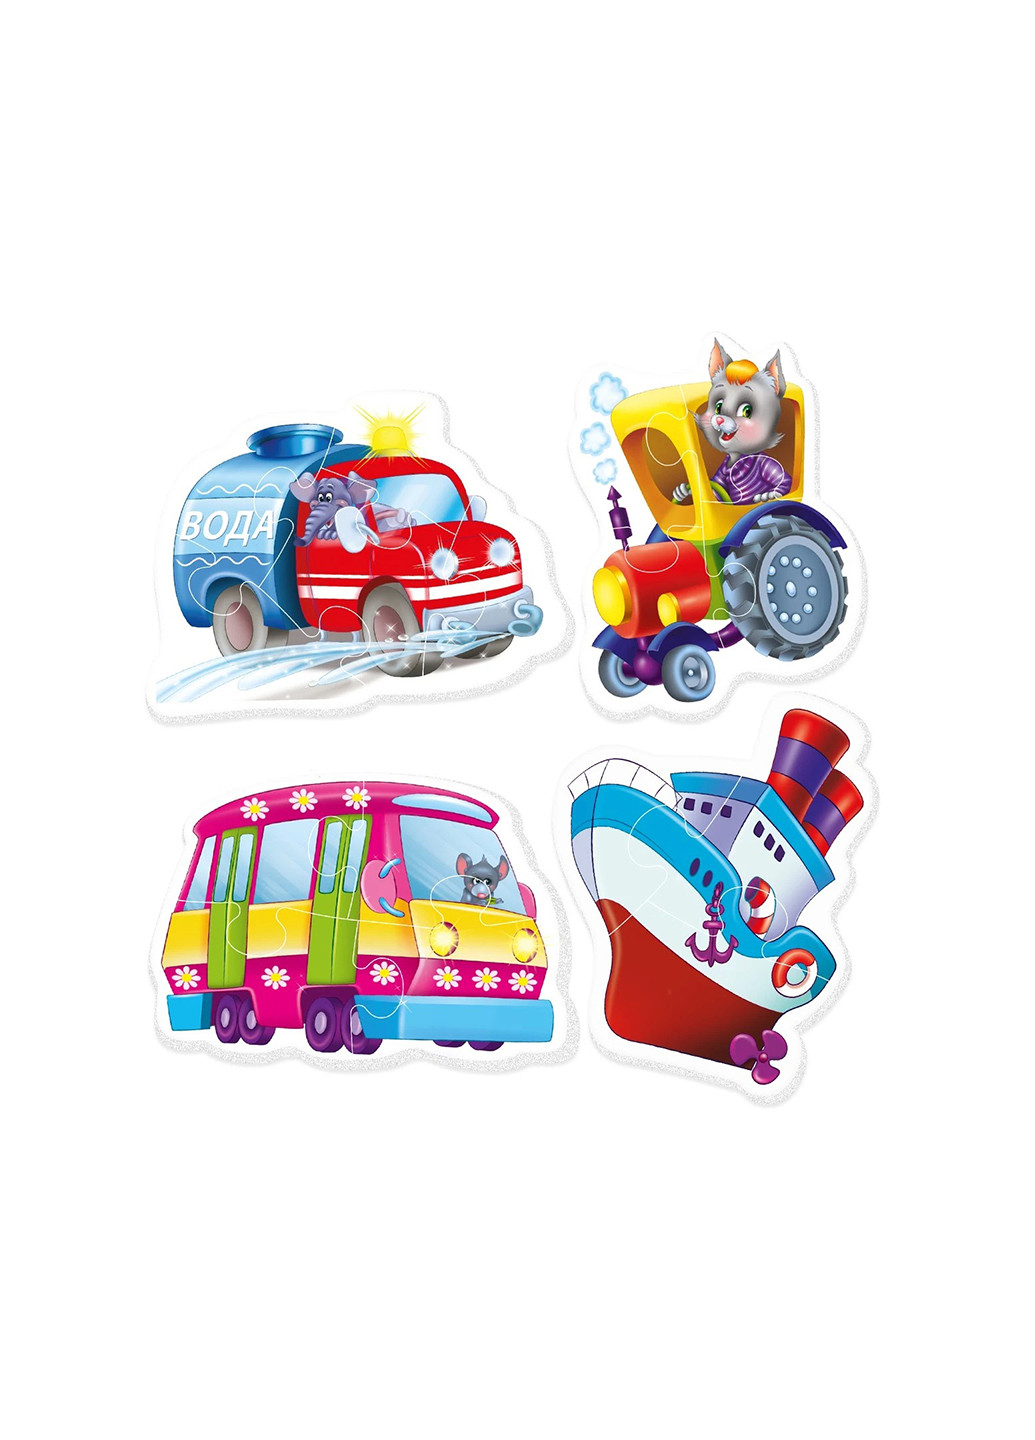 Беби-пазлы «Машины-помощники» Vladi toys vt1106-08 (257895439)